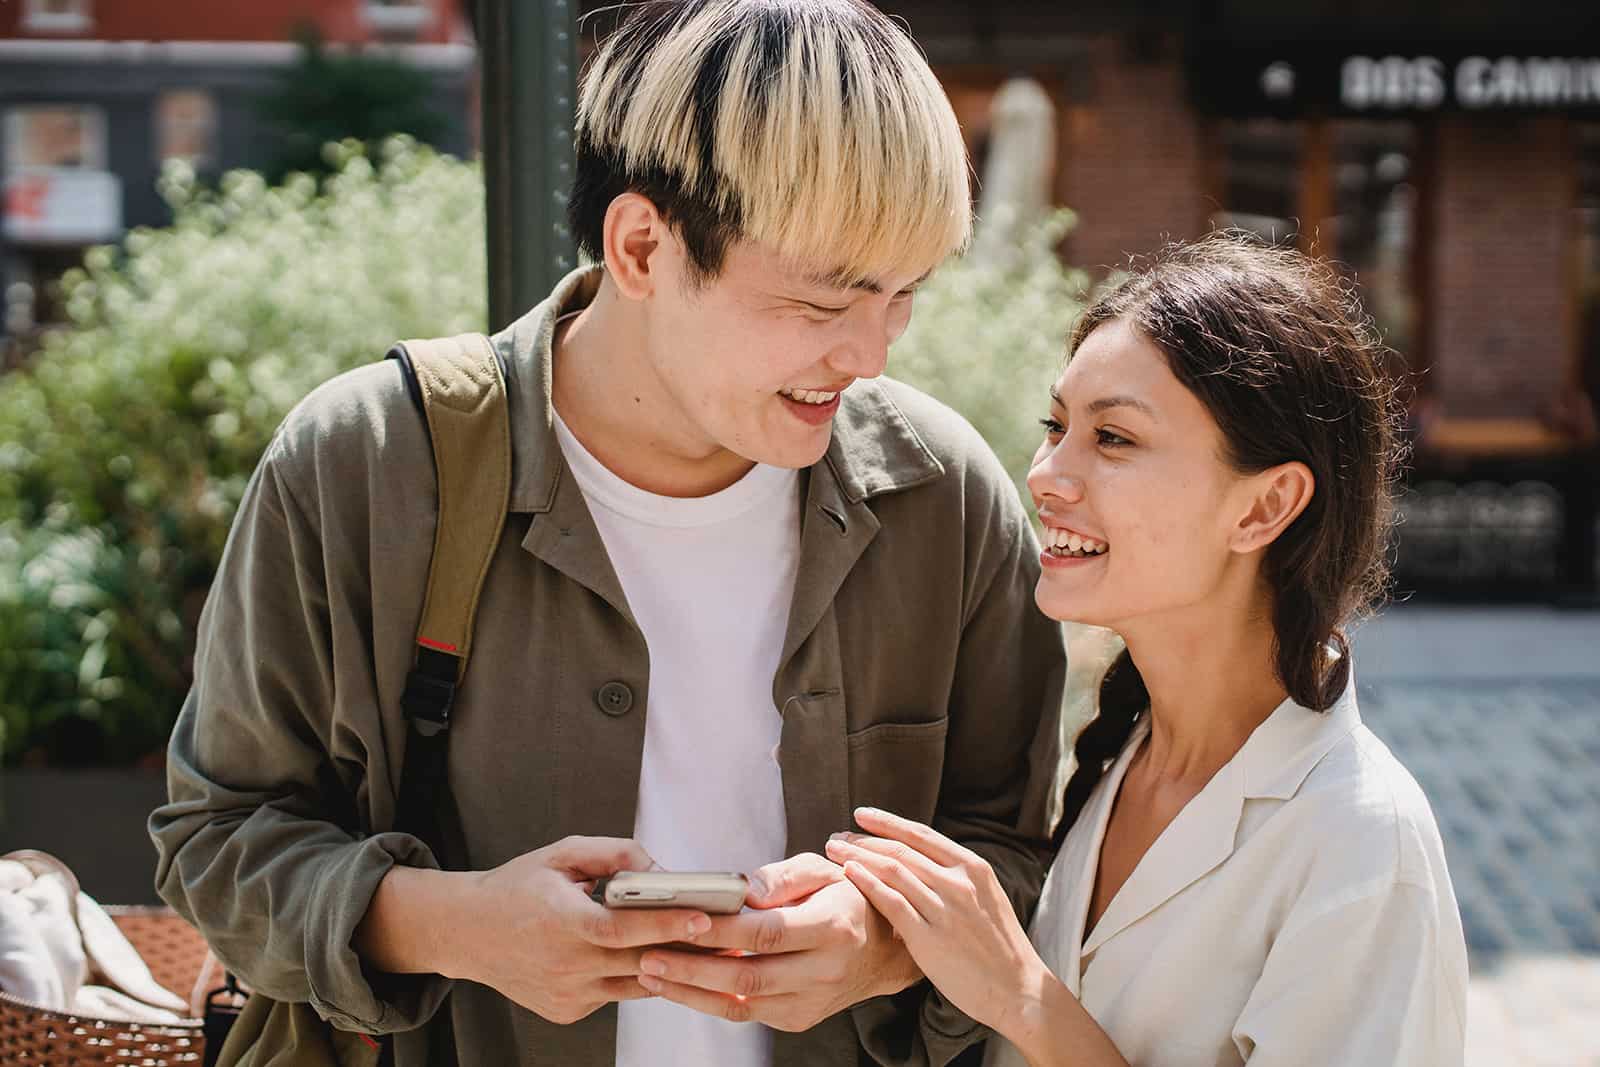 ein lächelnder Mann, der ein Smartphone hält und eine lächelnde Frau betrachtet, die seine Hand berührt